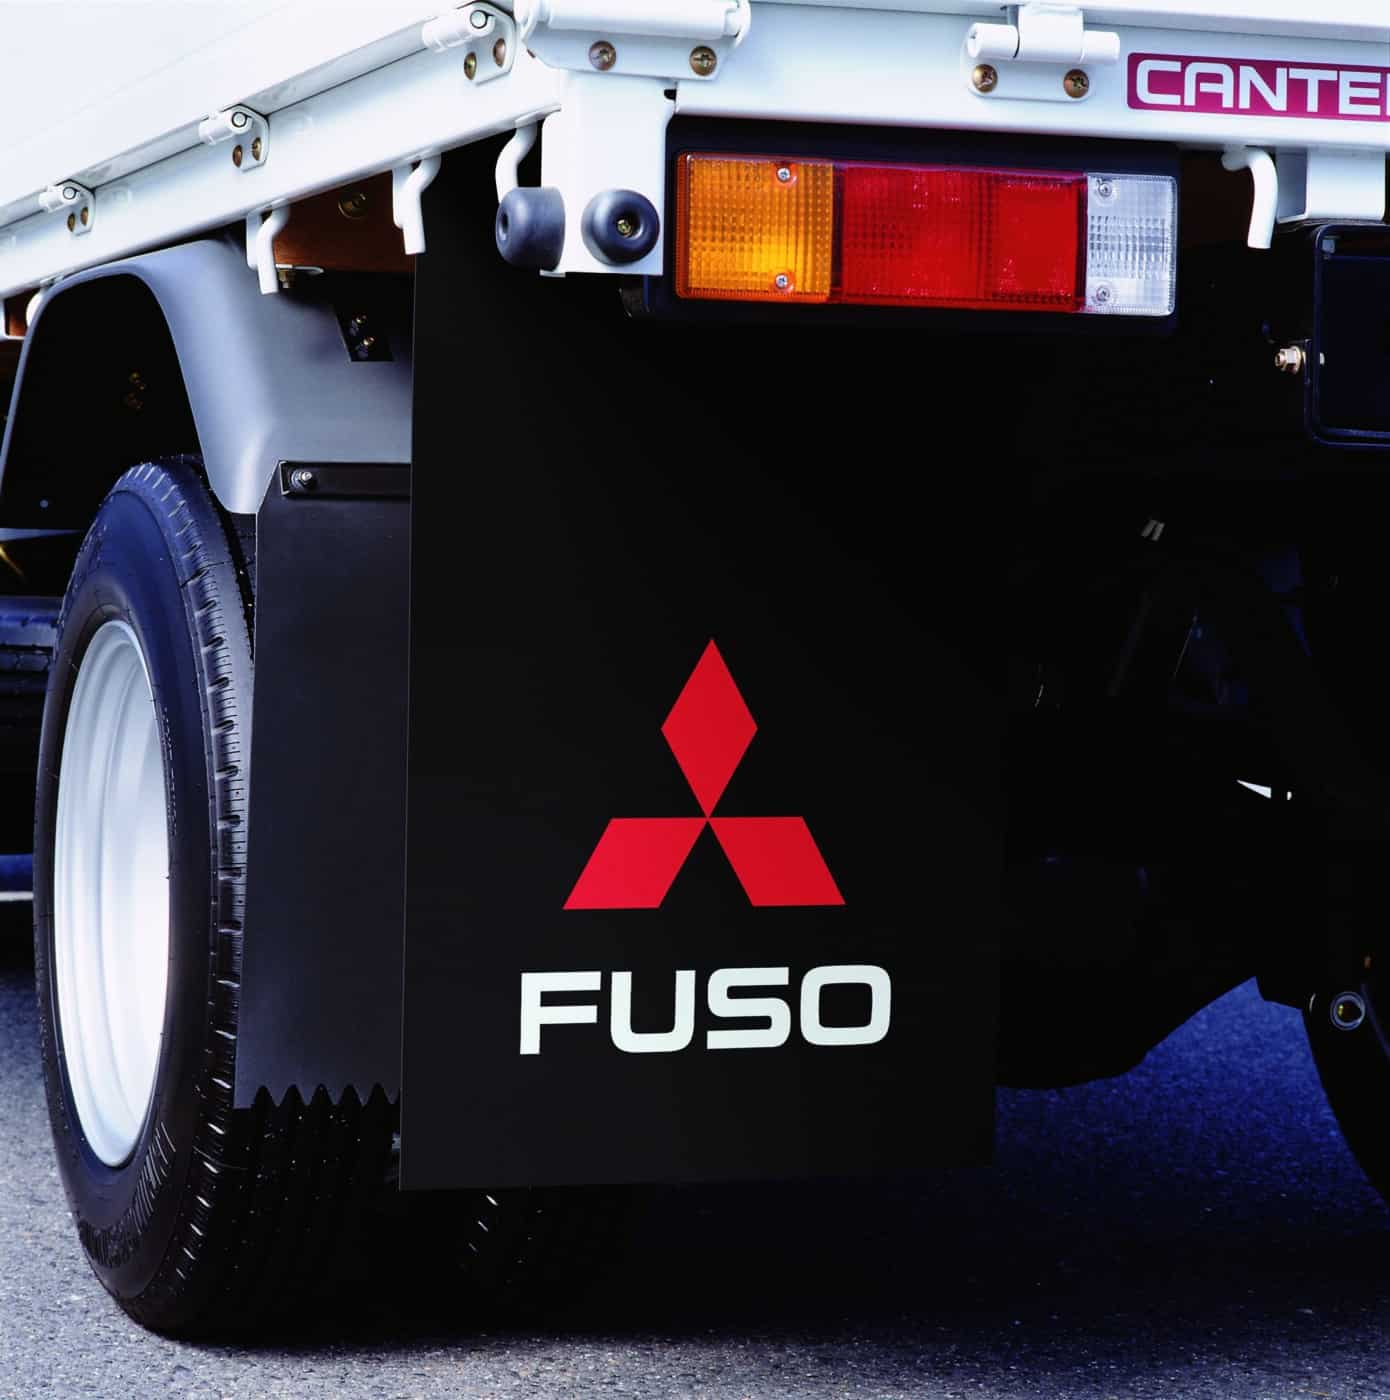 FUSO smudsafviser beskytter køretøj, passager, andre køretøjer og fodgængere mod slam og smuds, der hvirvles op af hjulene.